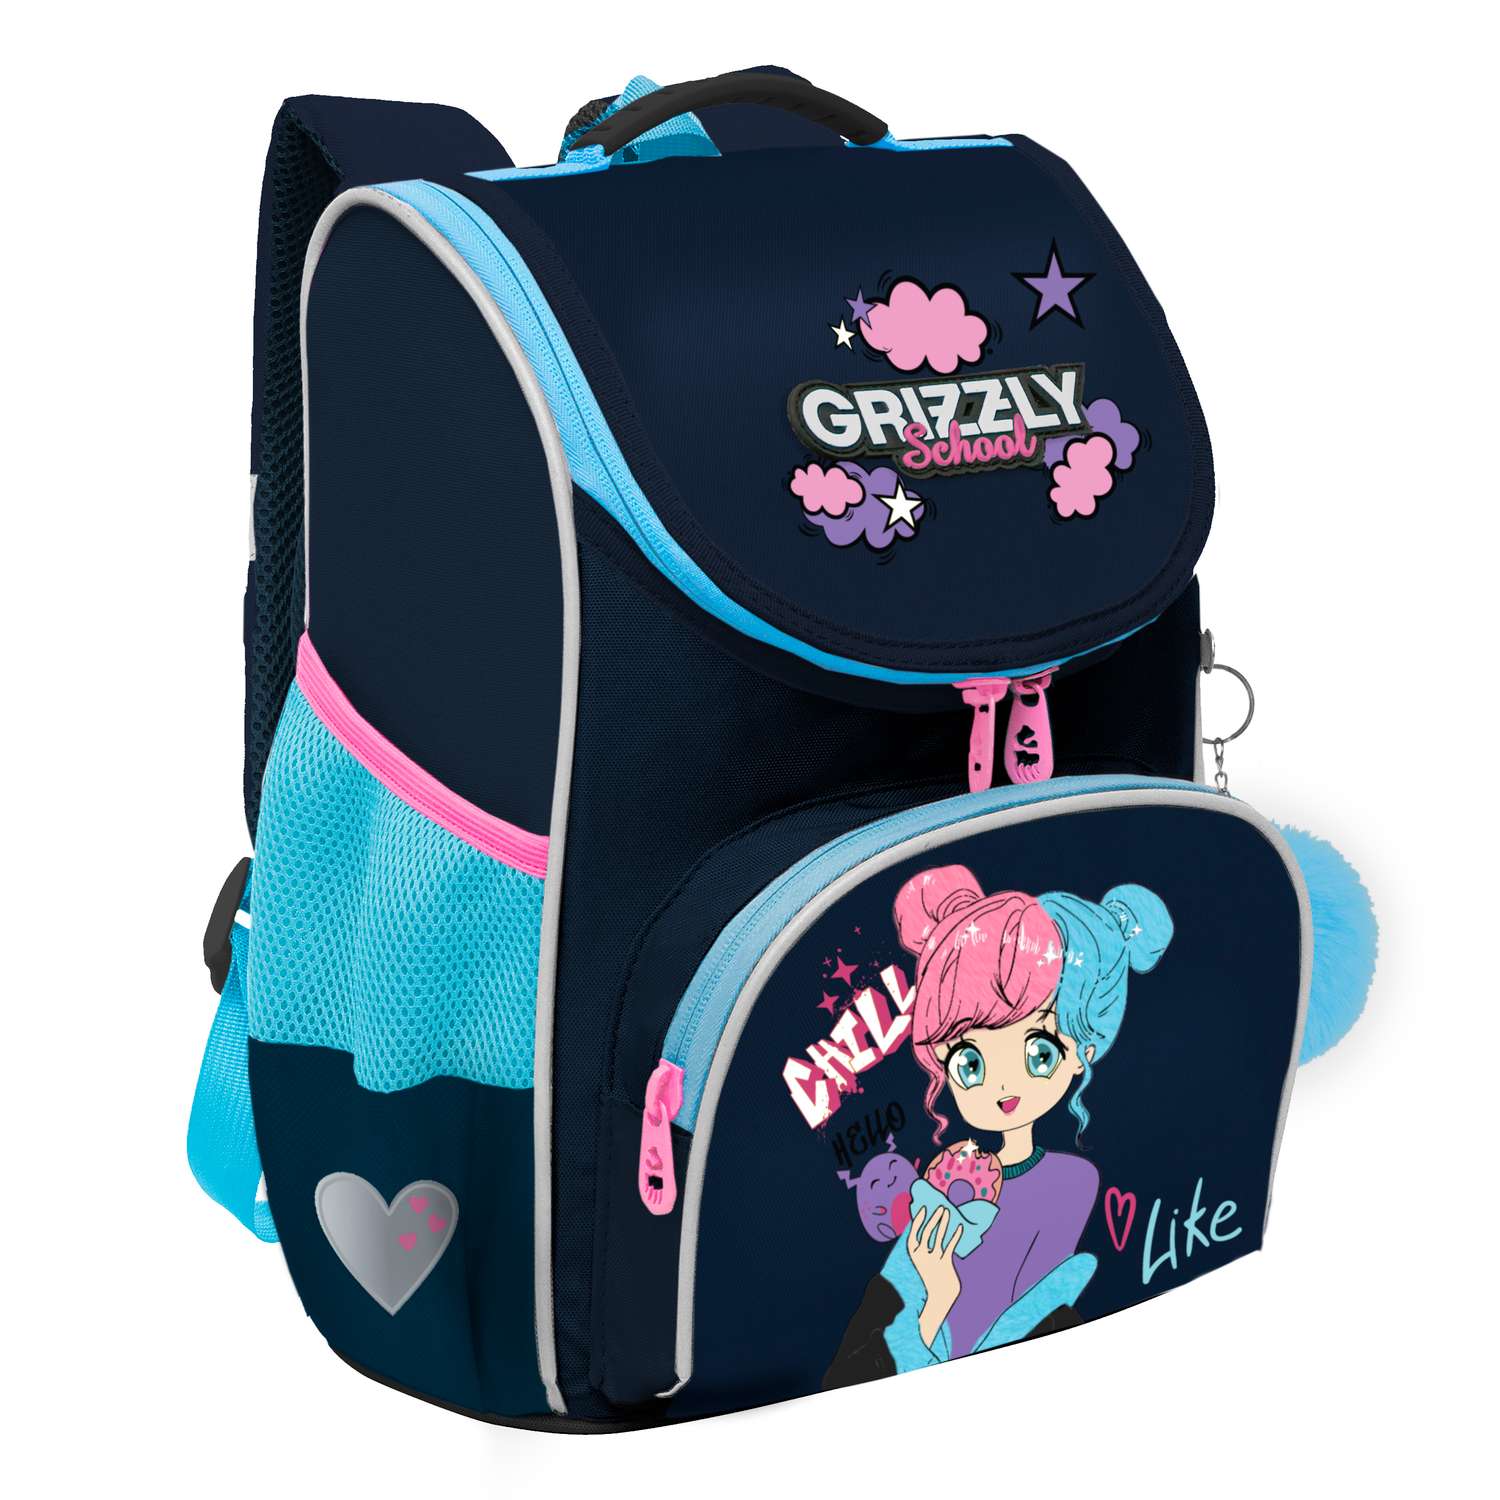 Рюкзак школьный с мешком Grizzly Синий RAm-484-6/2 - фото 1